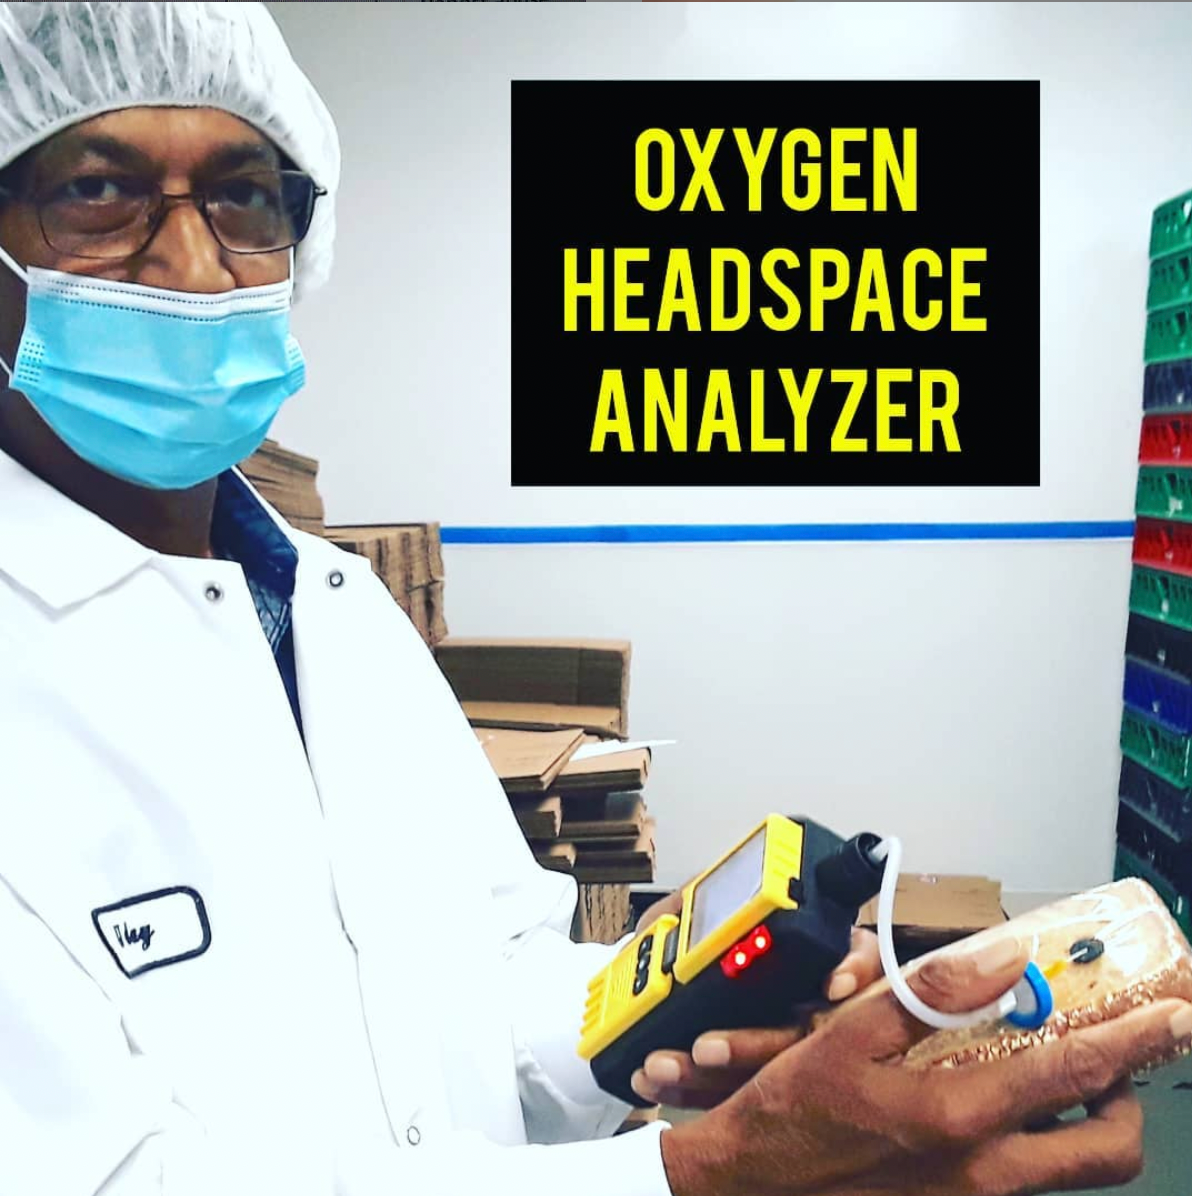 headspace analyzer